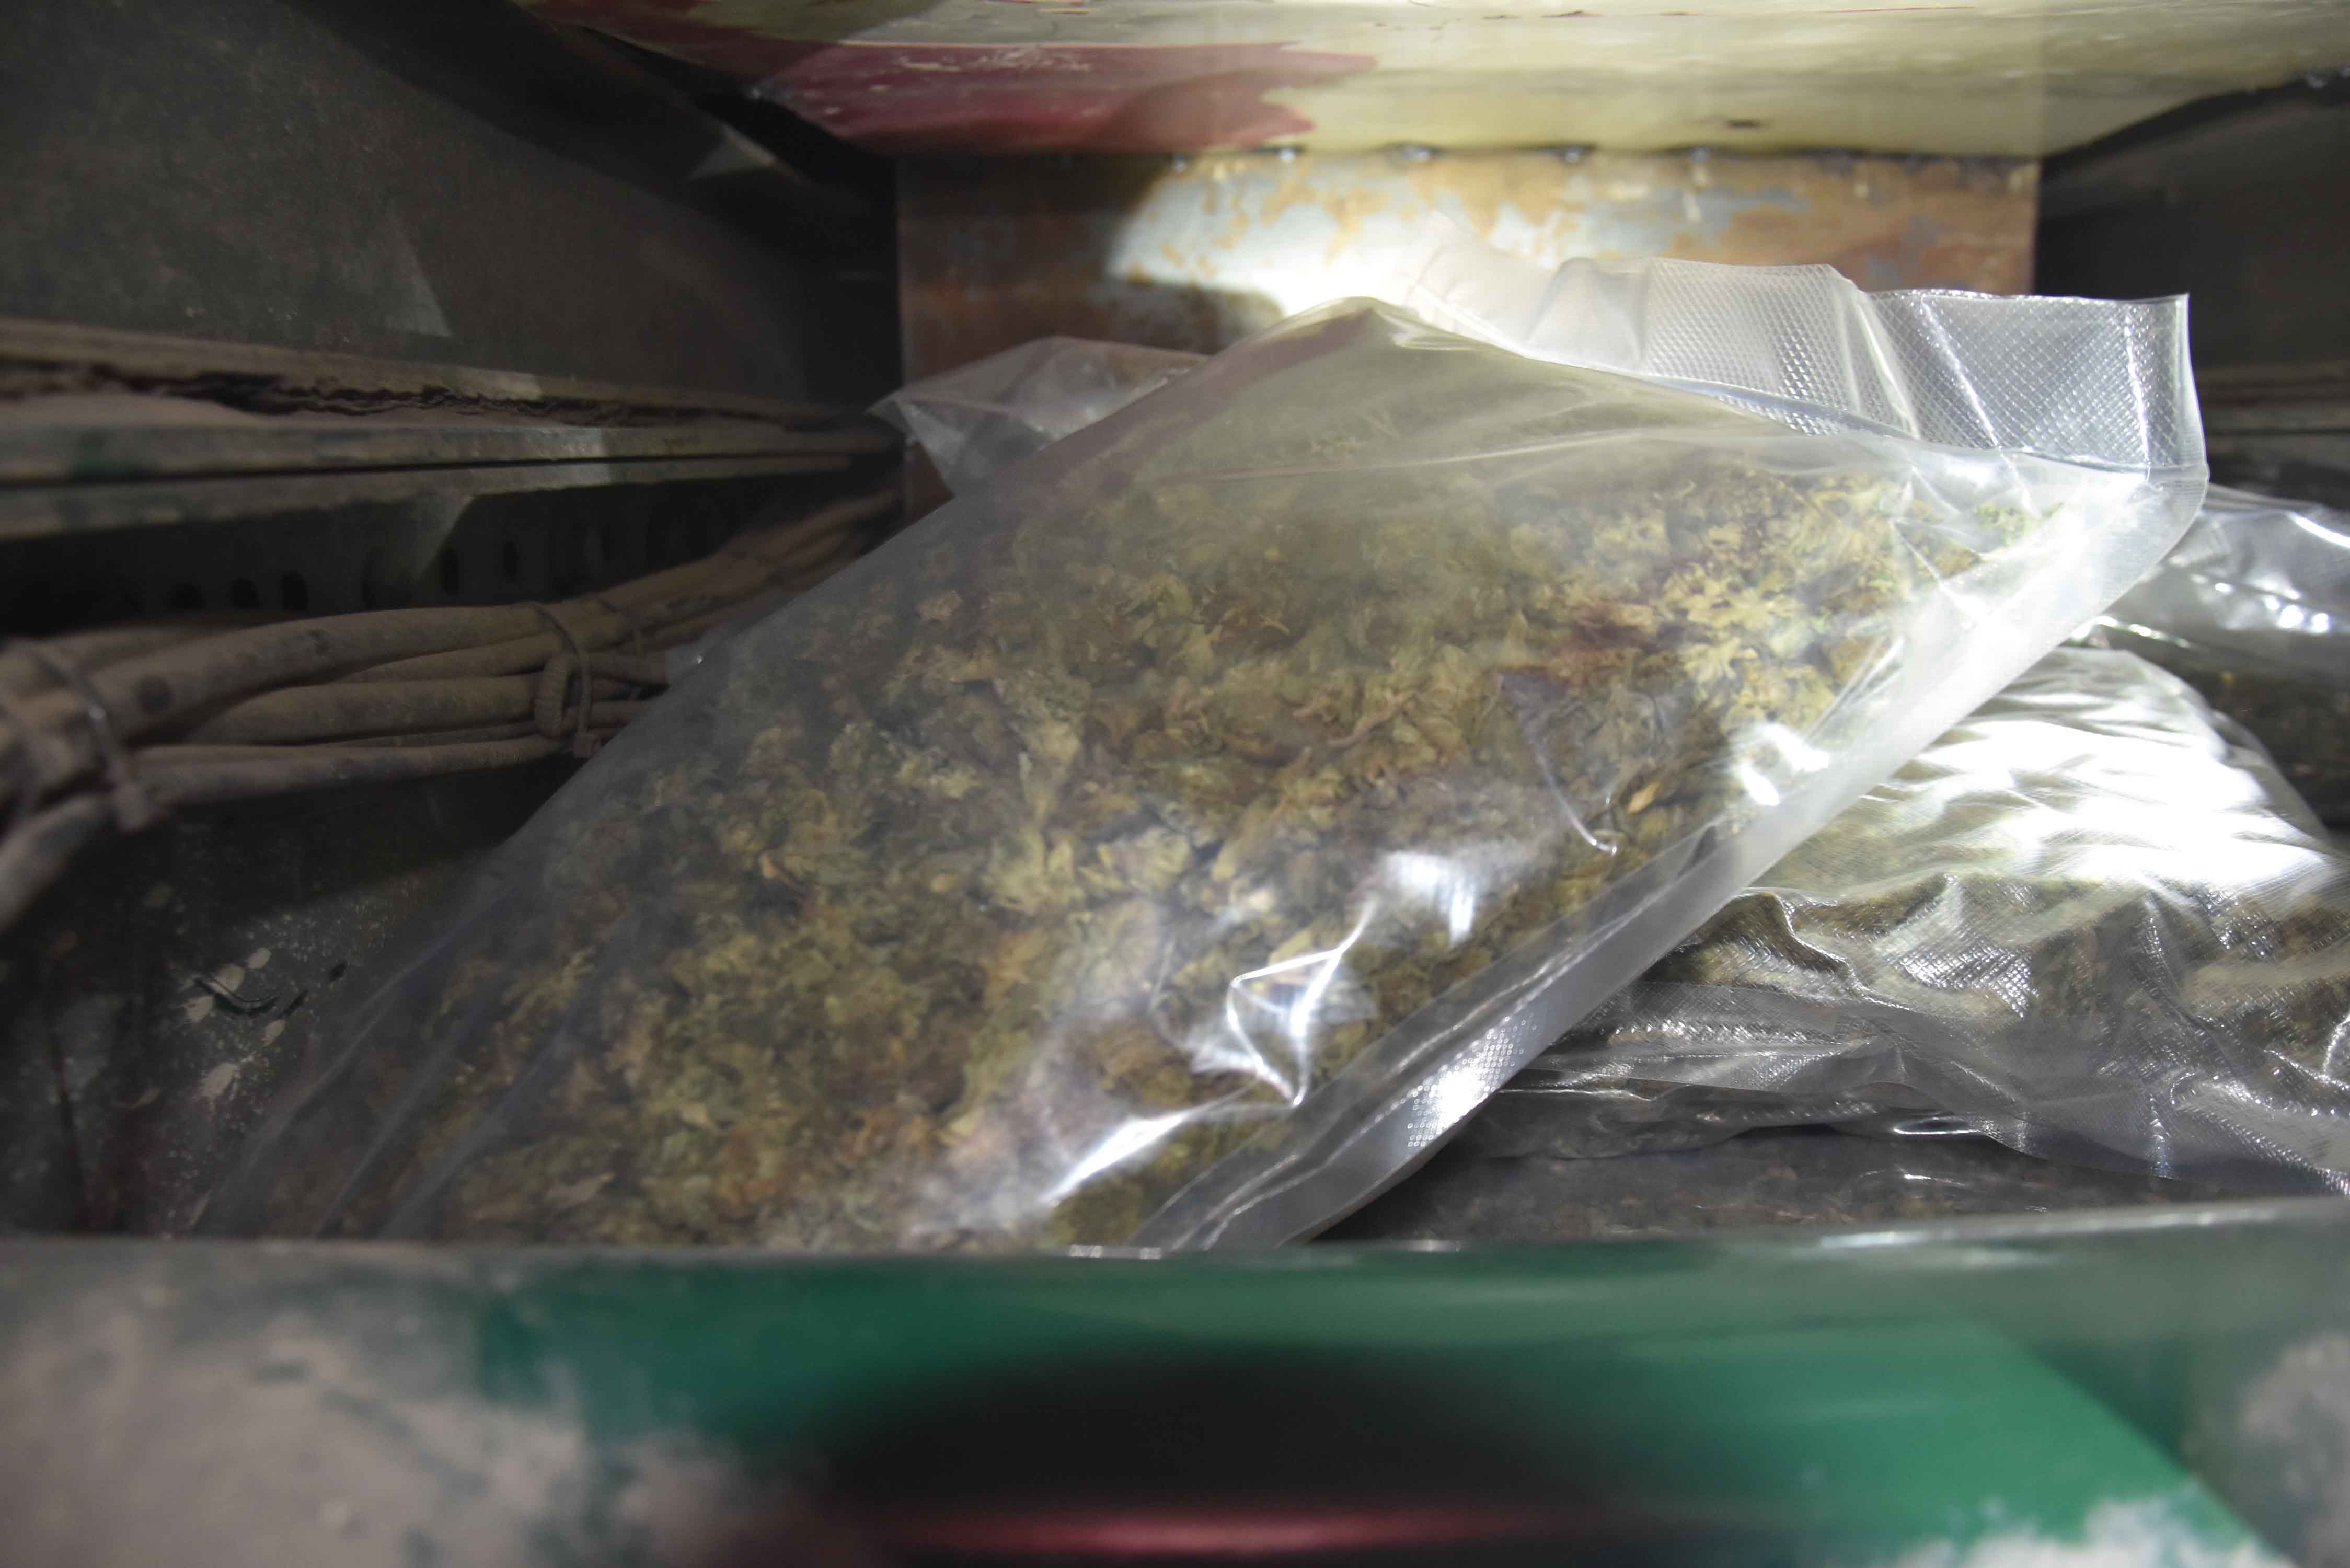 U bunkeru prevozili više od 10 kilograma marihuane